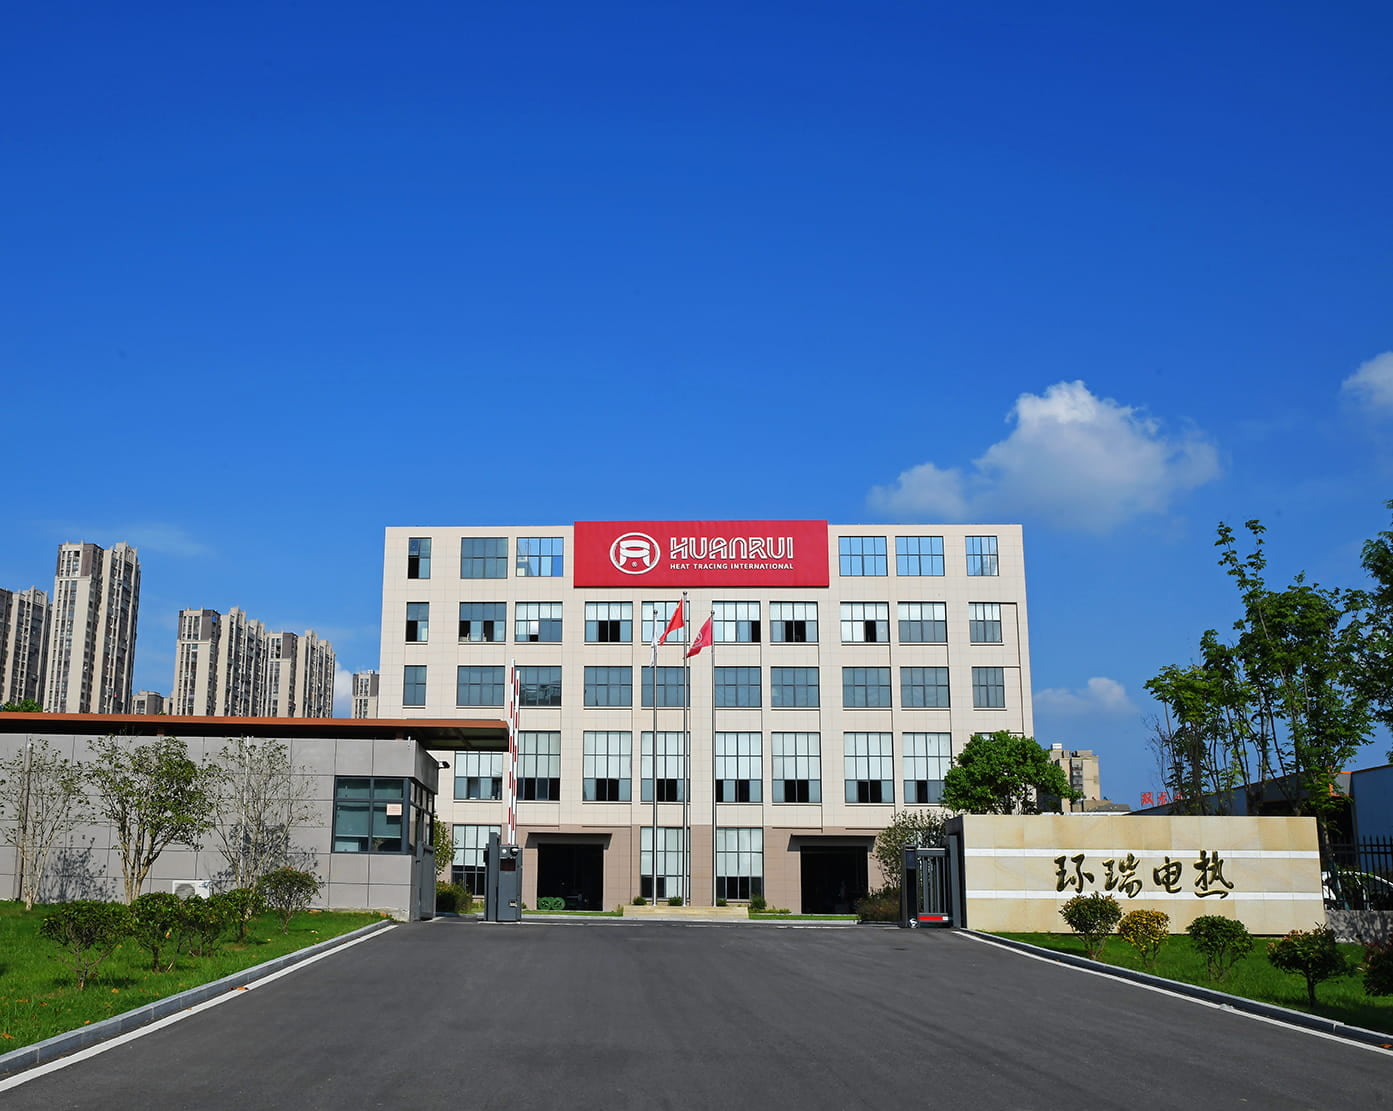 Тепло отмечаем успешное предложение Anhui Huanrui на проект по закупке электрического нагревательного ремня и аксессуаров CNPC.
